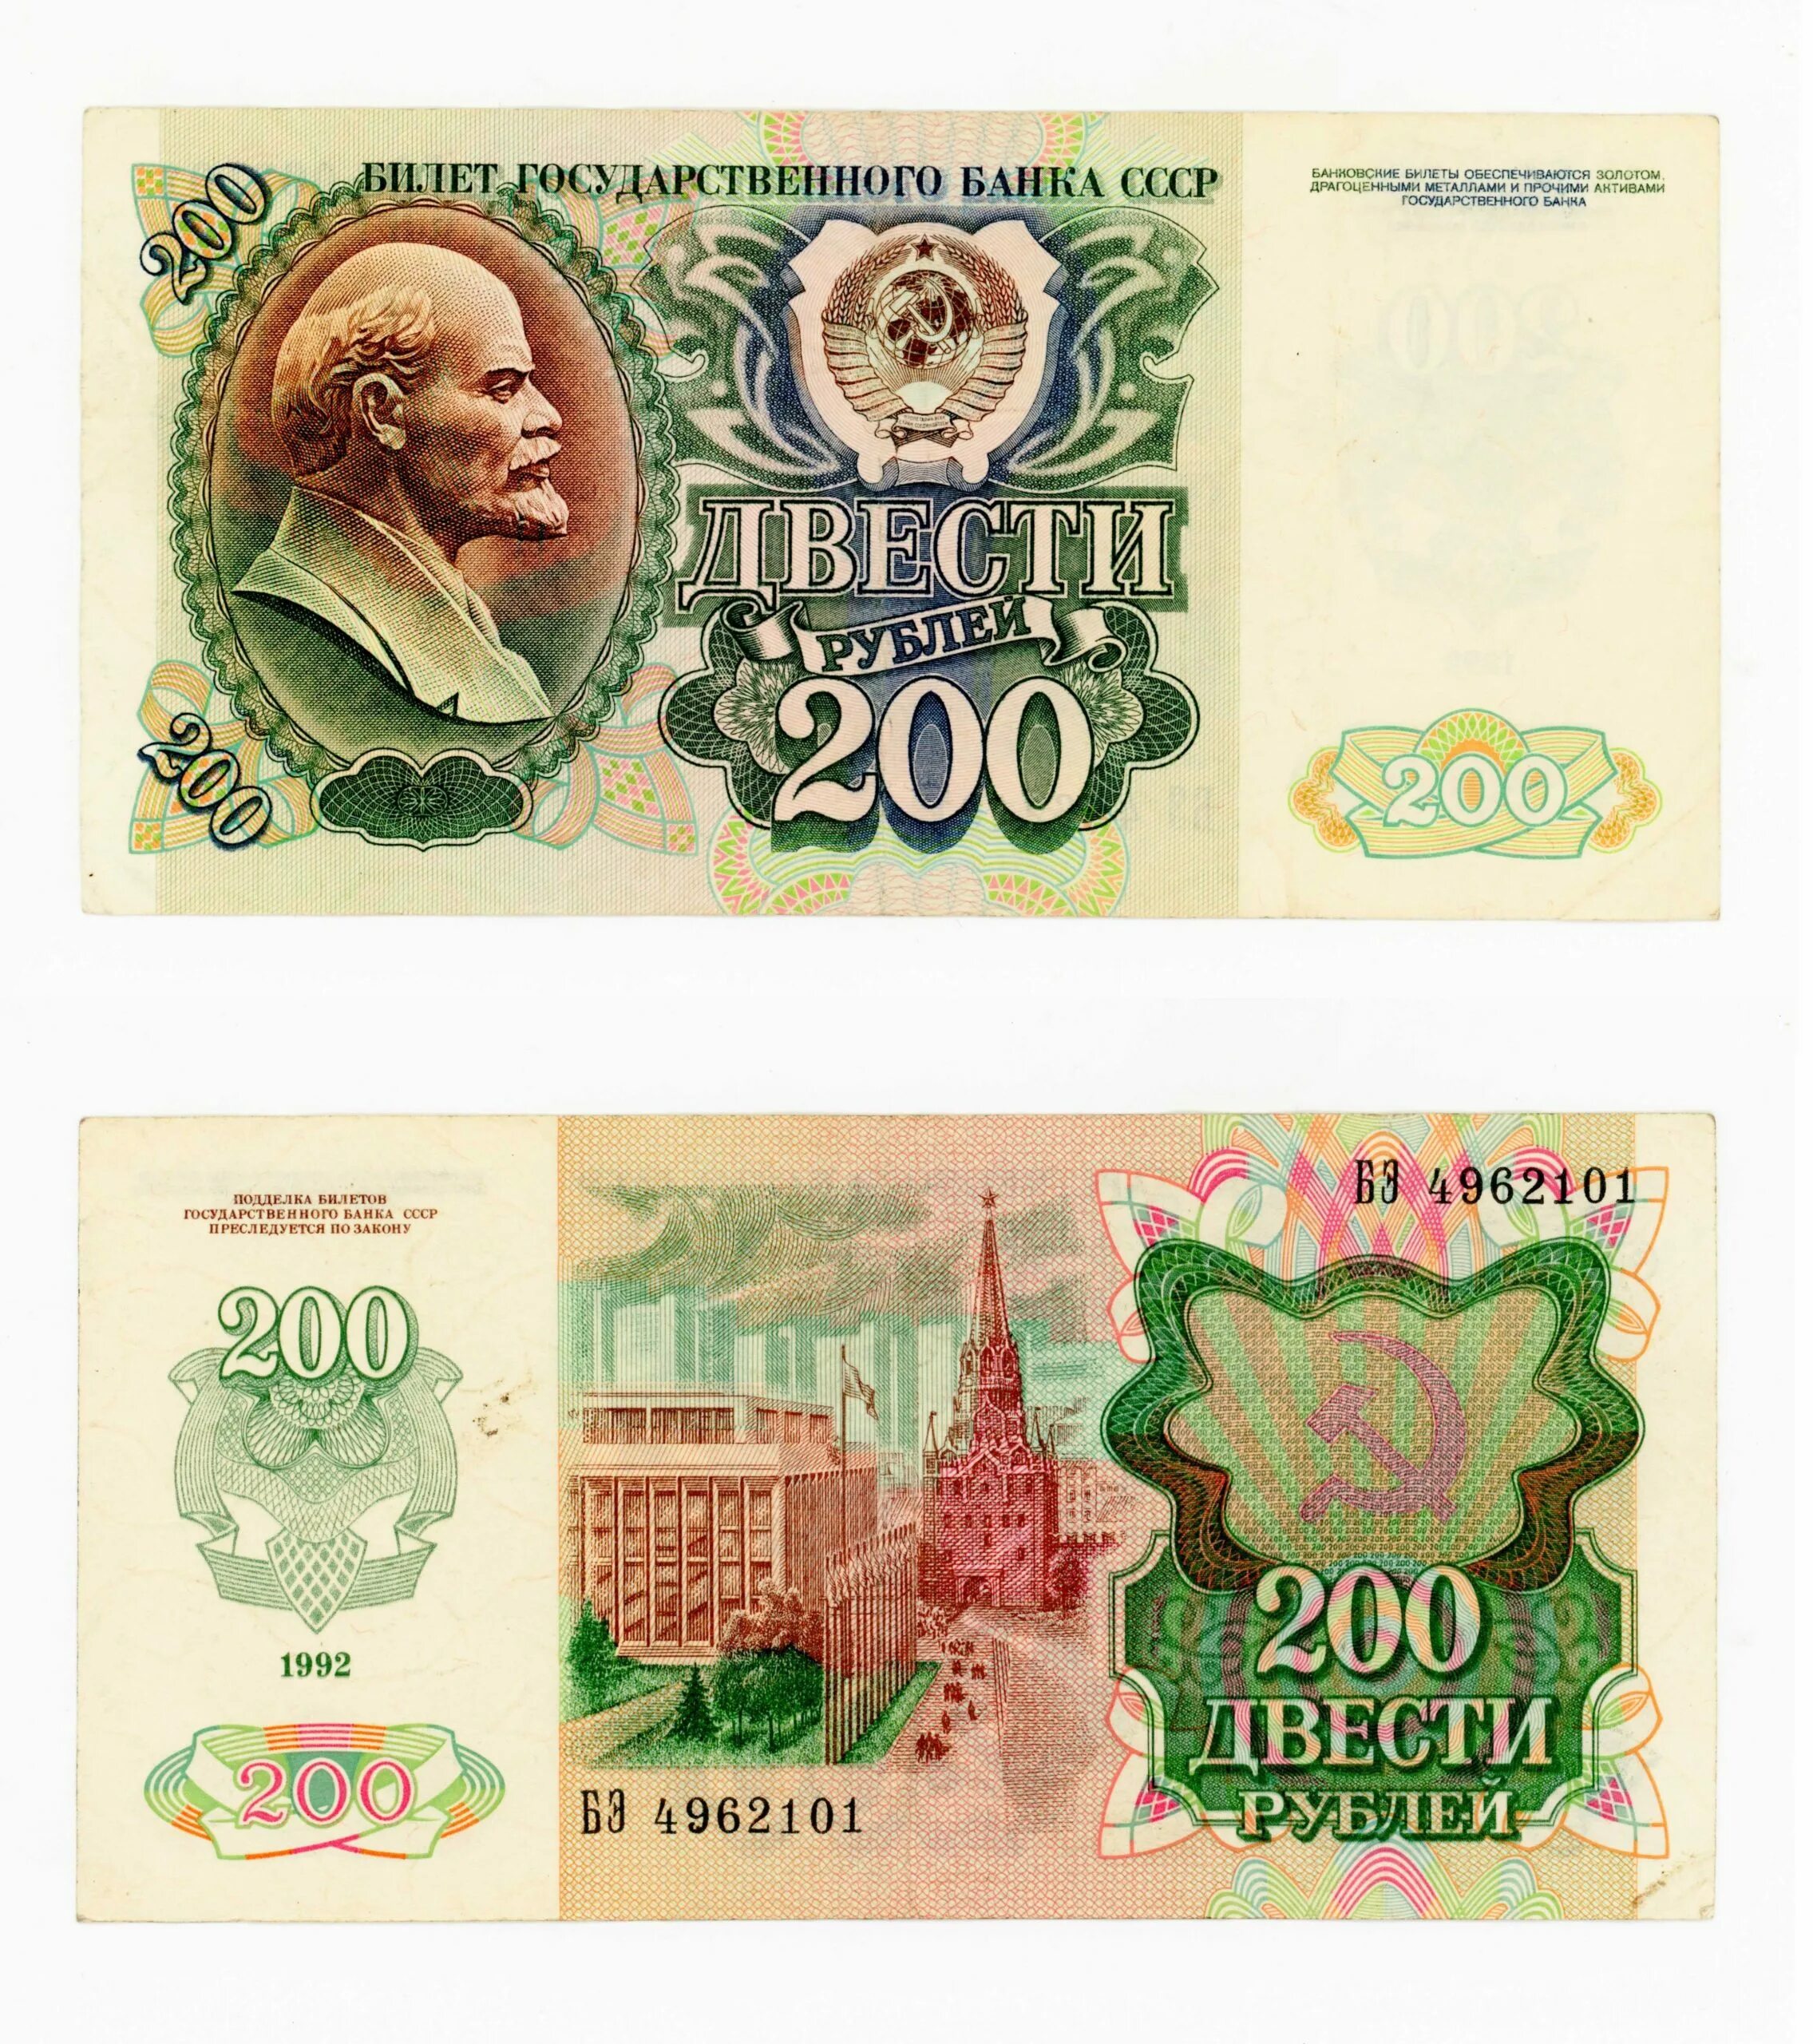 Билет государственного банка. 200 Рублей 1992 года. Бумажные 200 рублей 1992 года. Советские 200 рублей. 200 Рублей банка СССР.